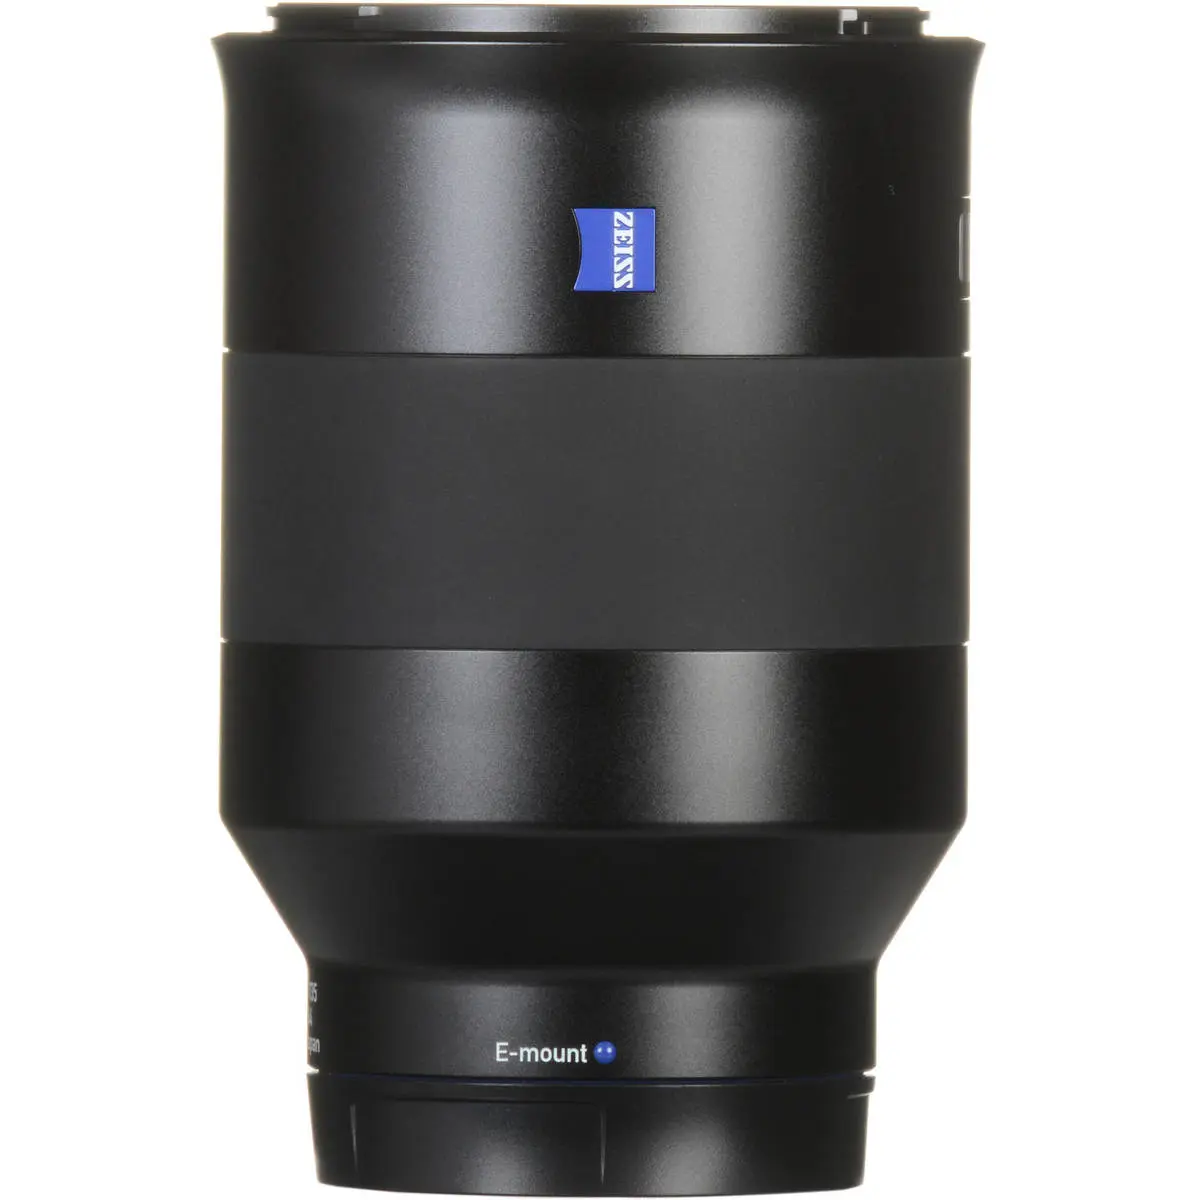 13. Carl Zeiss Batis 135mm F2.8 for Sony E mount Lens